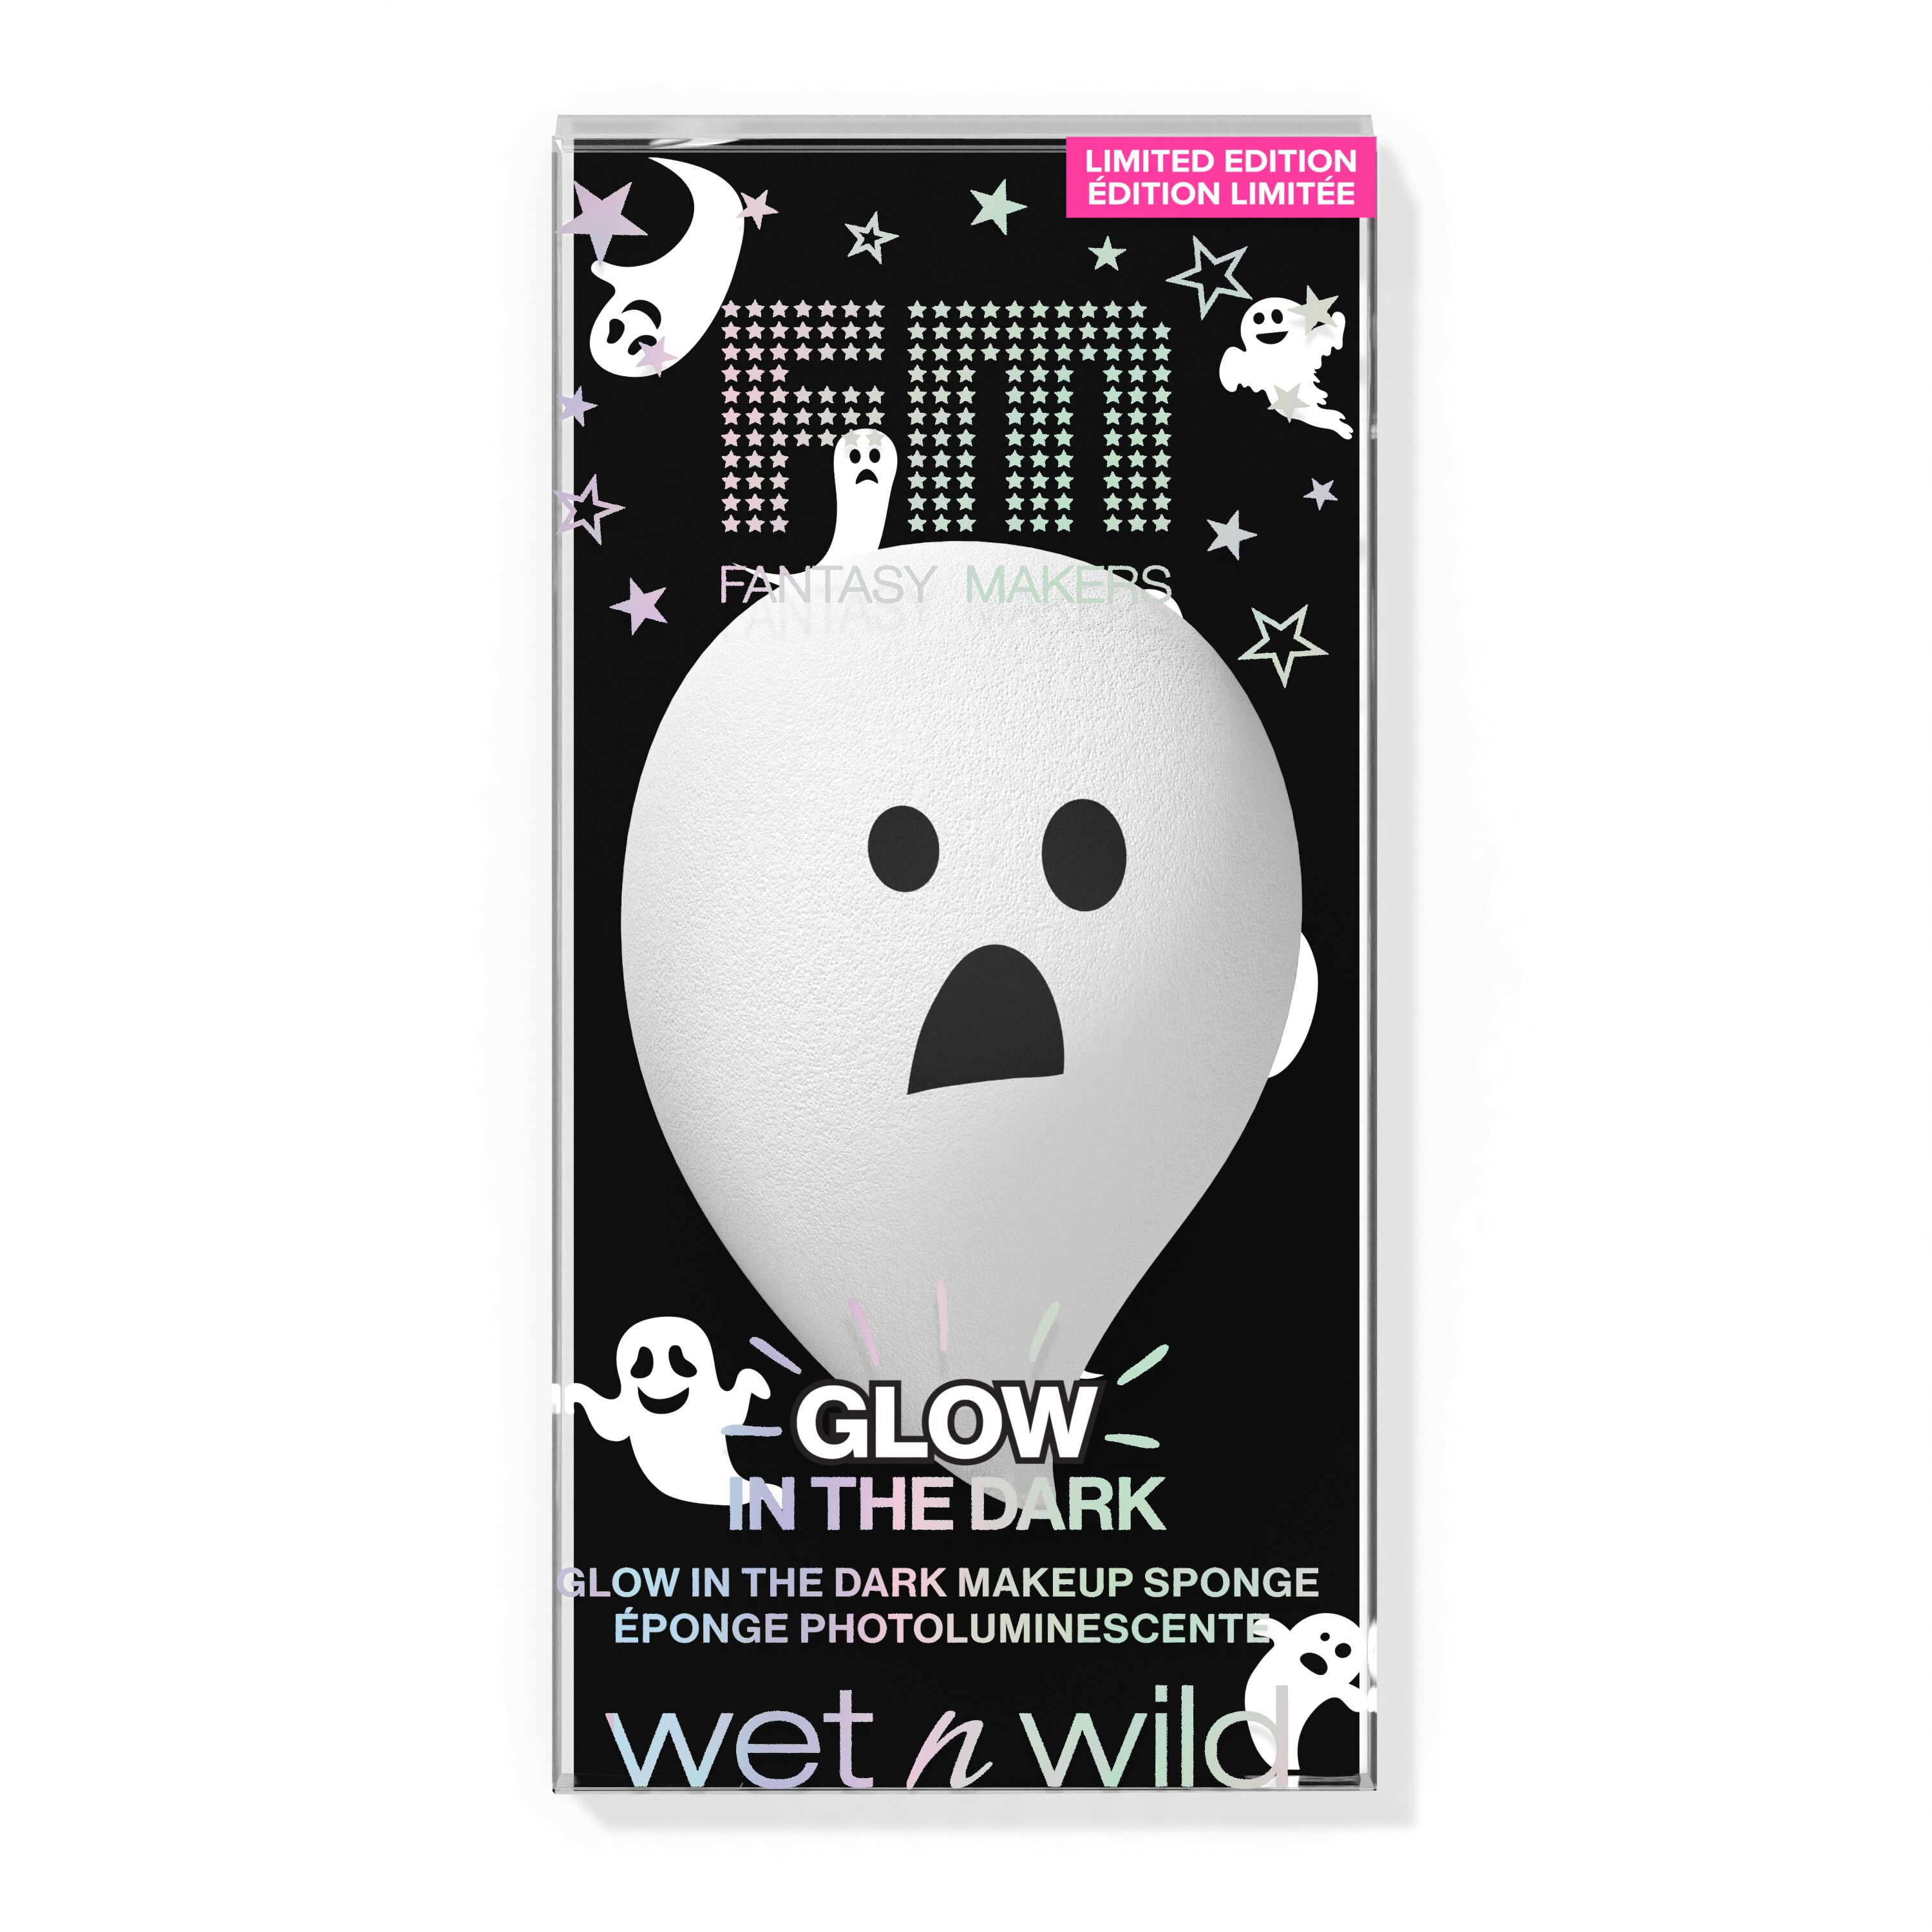 wet n wild Fantasy Maker Glow in the Dark Makeup Sponge